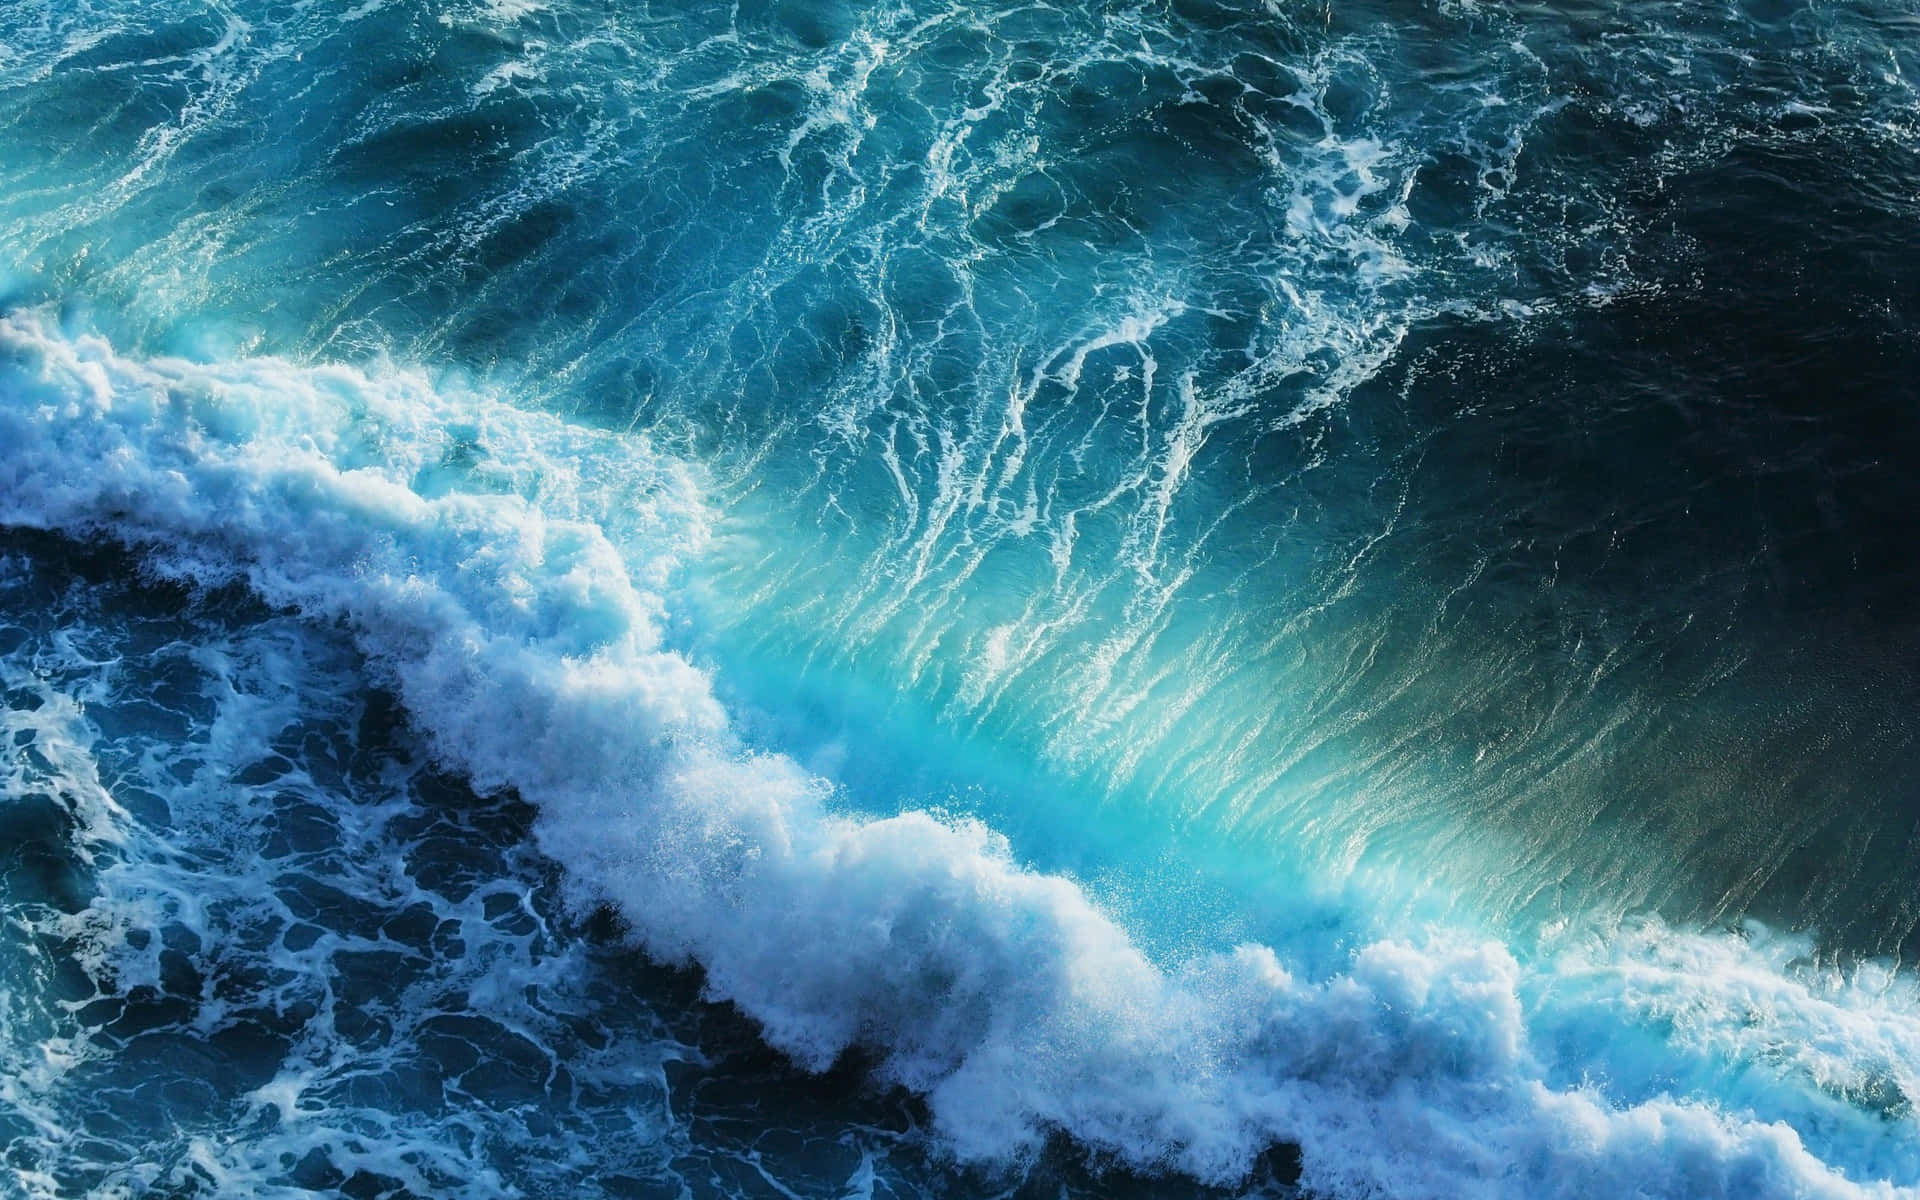 Swirling Wave in a Blue Sea